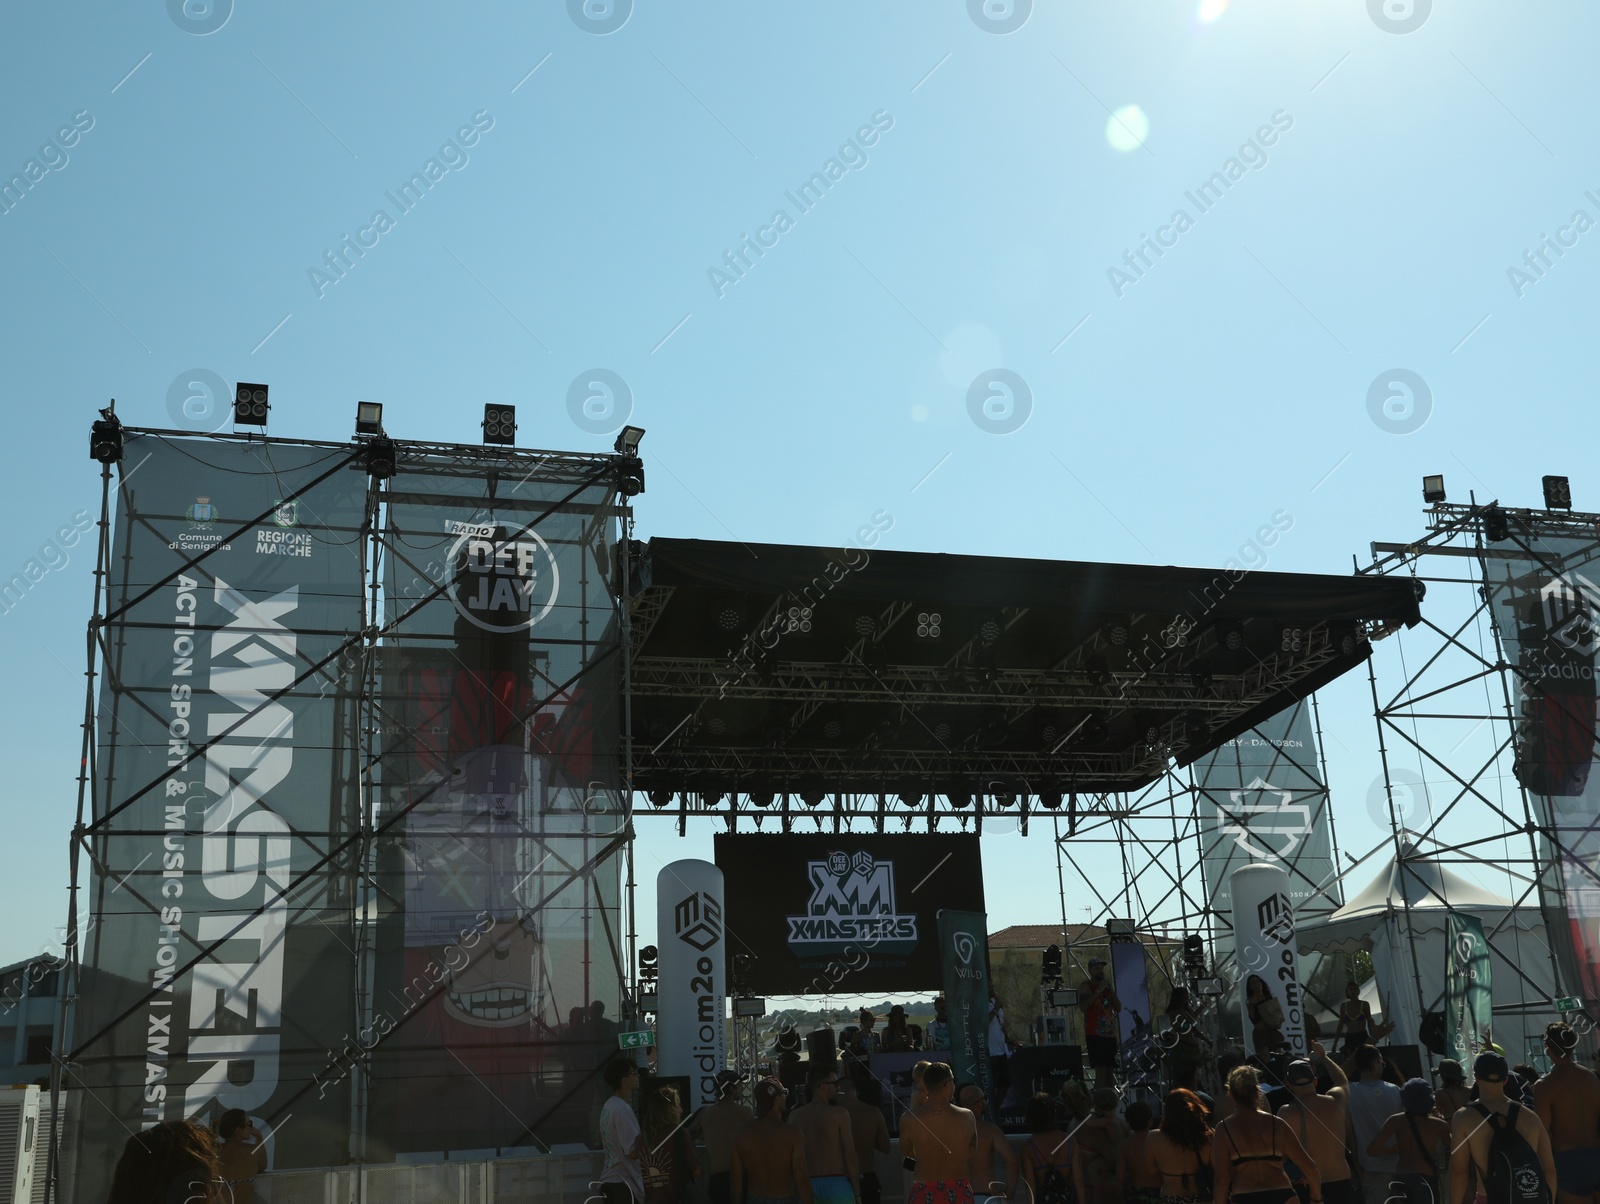 Photo of SENIGALLIA, ITALY - JULY 22, 2022: People enjoying music festival under blue sky